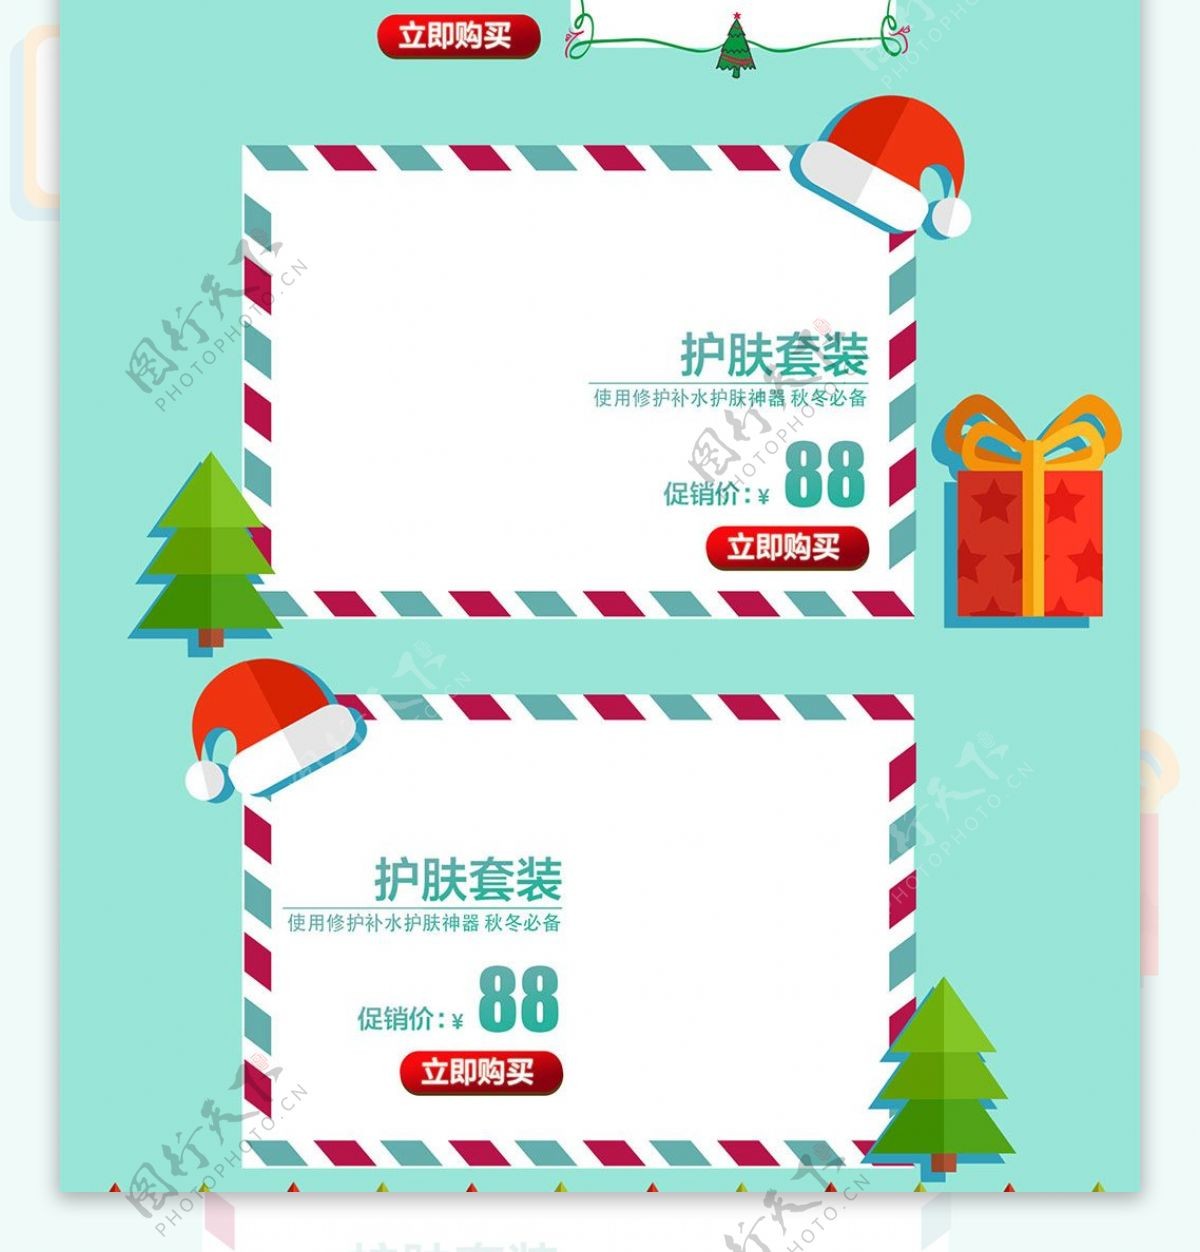 蓝绿色卡通促销圣诞节通用淘宝电商首页模板